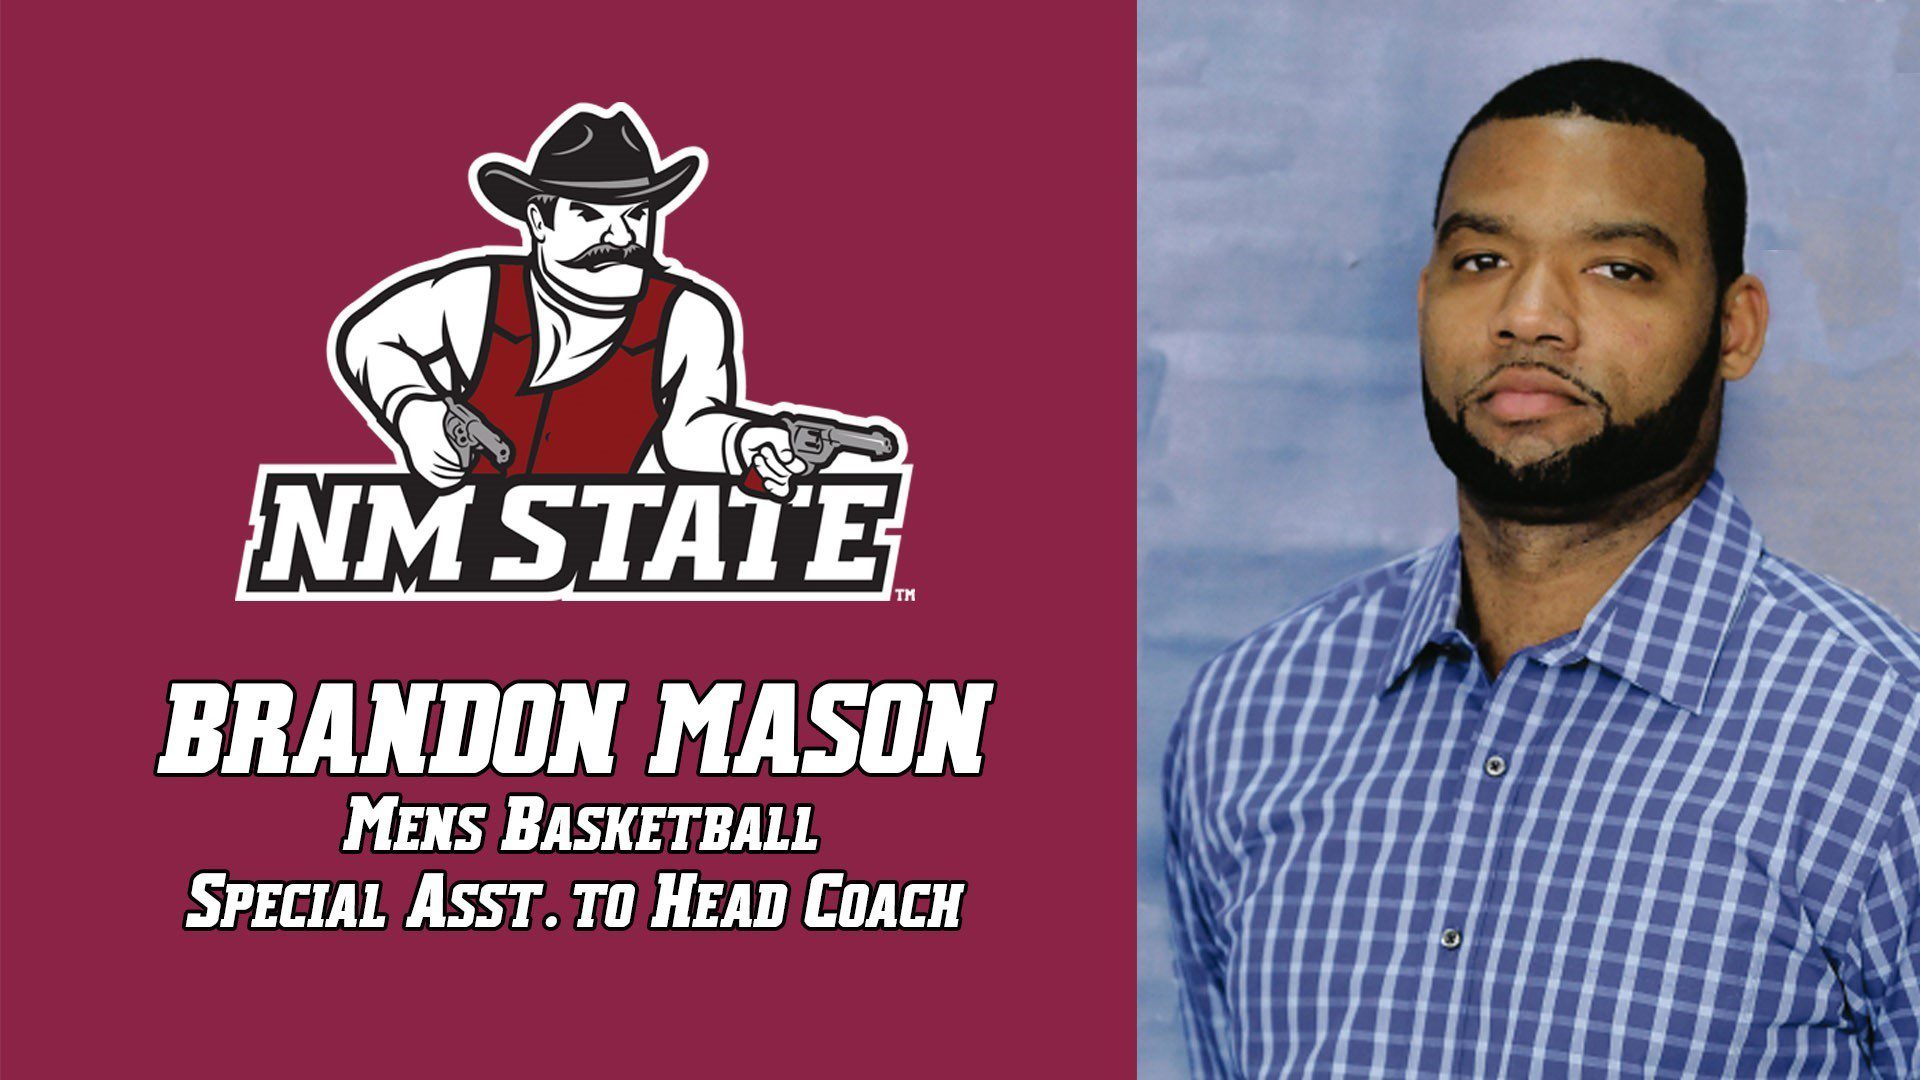 Brandon Mason